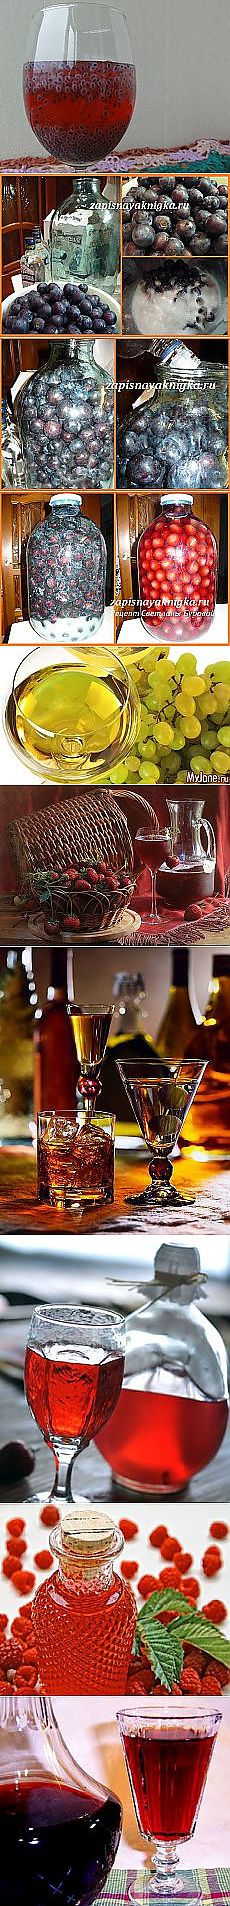 Поиск на Постиле: домашнее вино и наливки